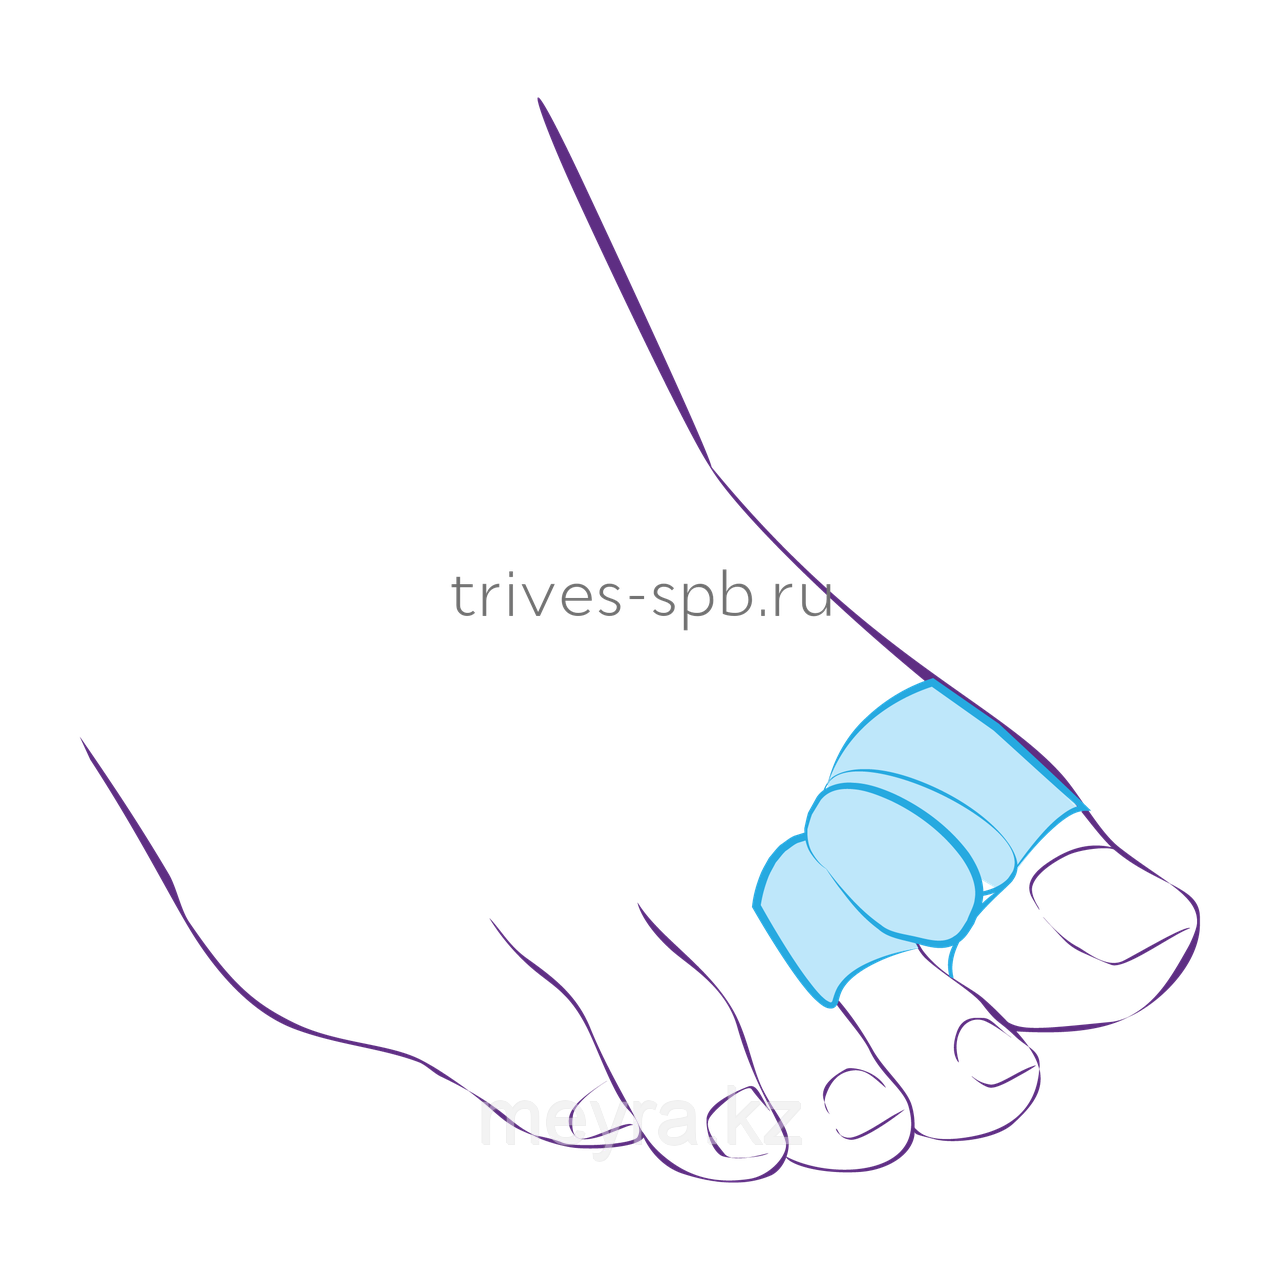 Перегородка межпальцевая с кольцами на первый и второй пальцы, фото 1